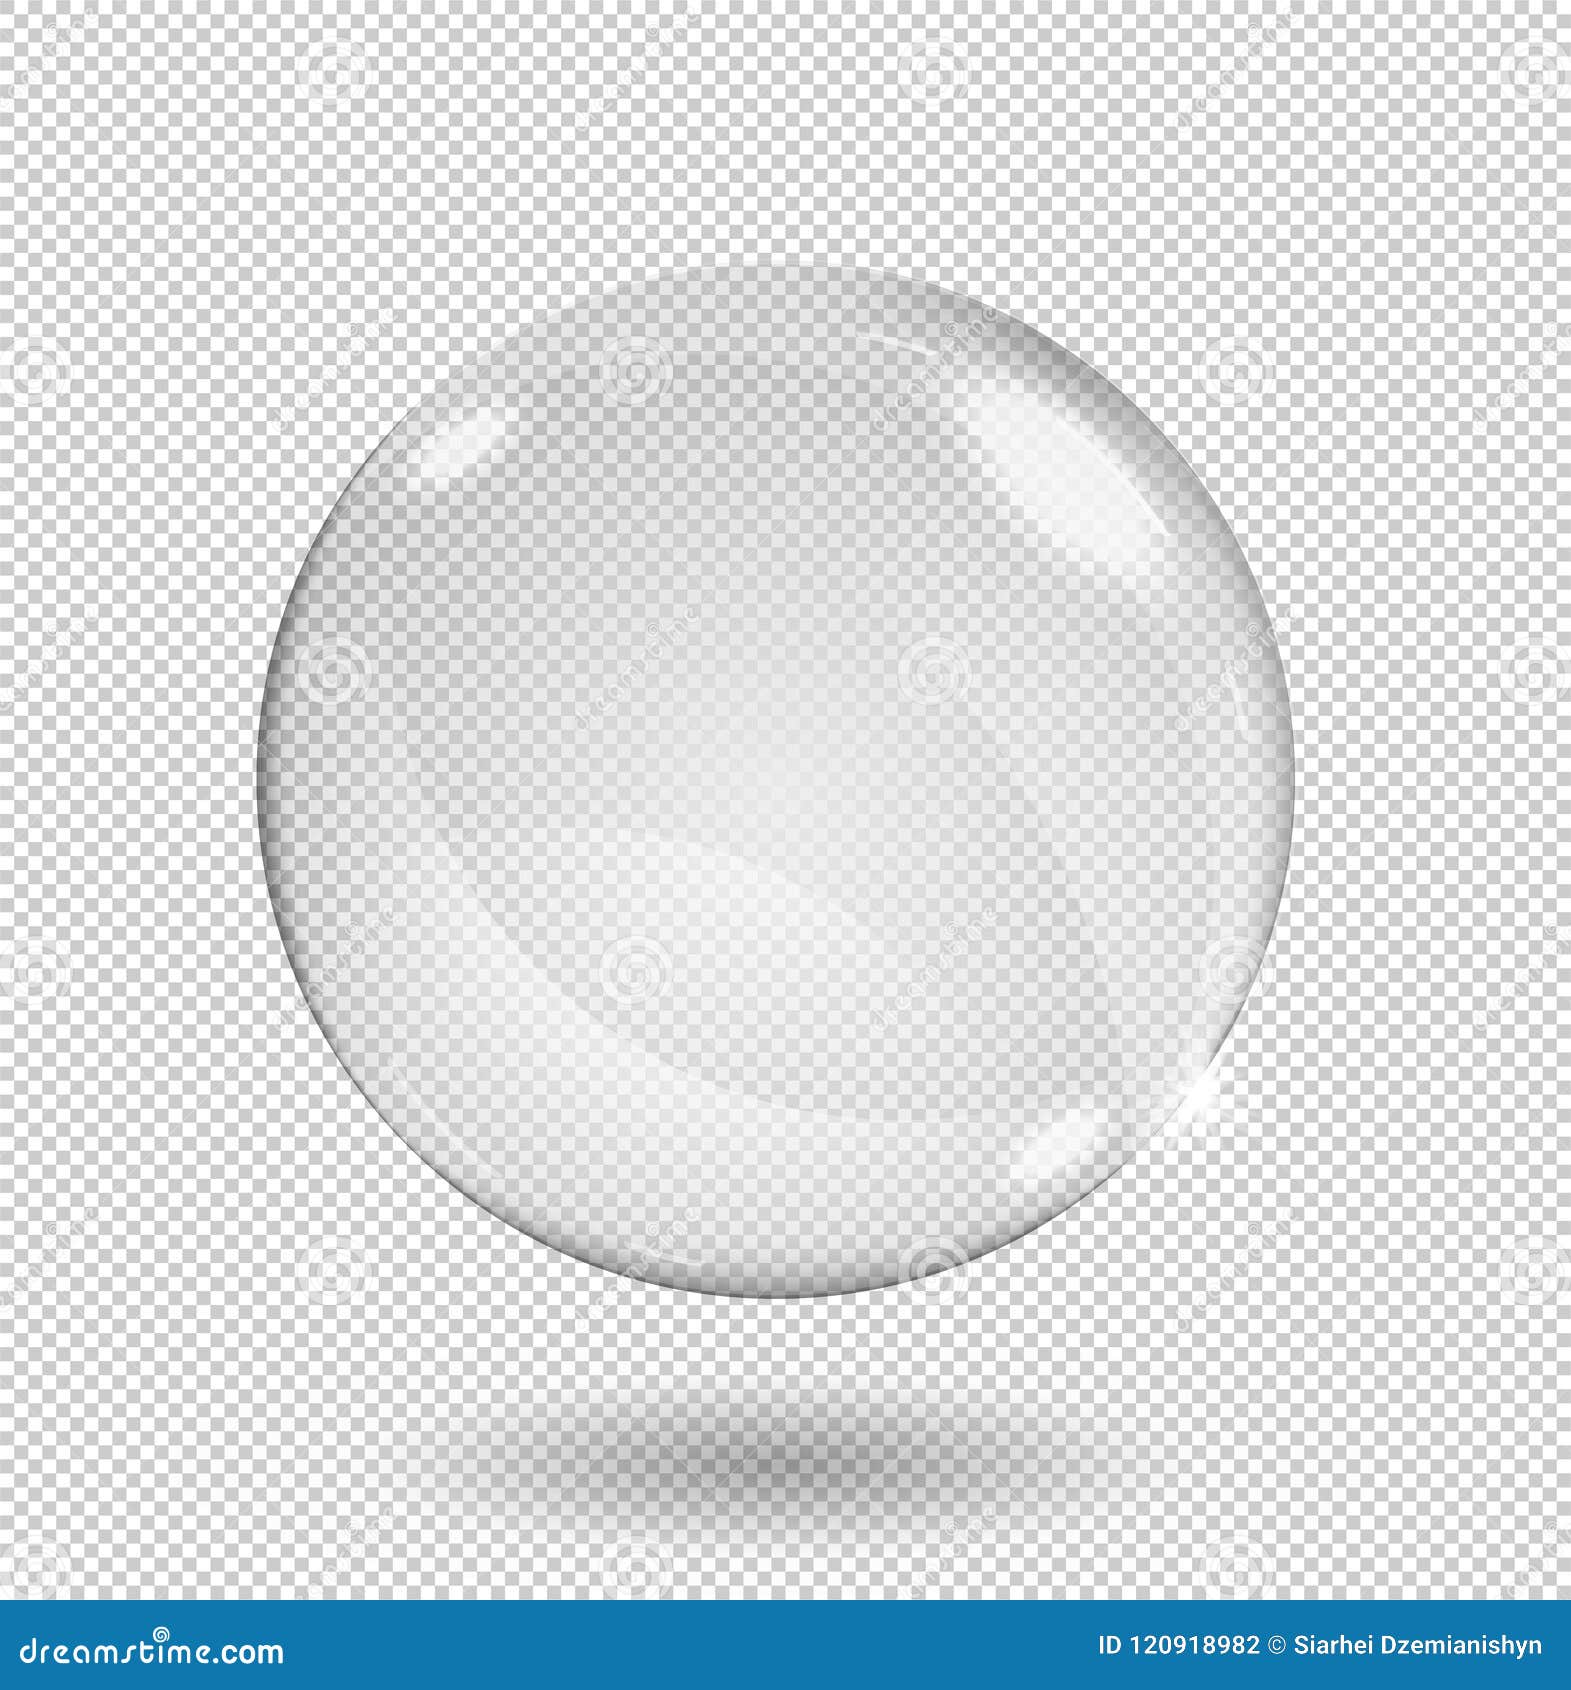 Bola De Cristal Transparente PNG , Transparente, Bola De Vidro, Bola De  Cristal Imagem PNG e PSD Para Download Gratuito